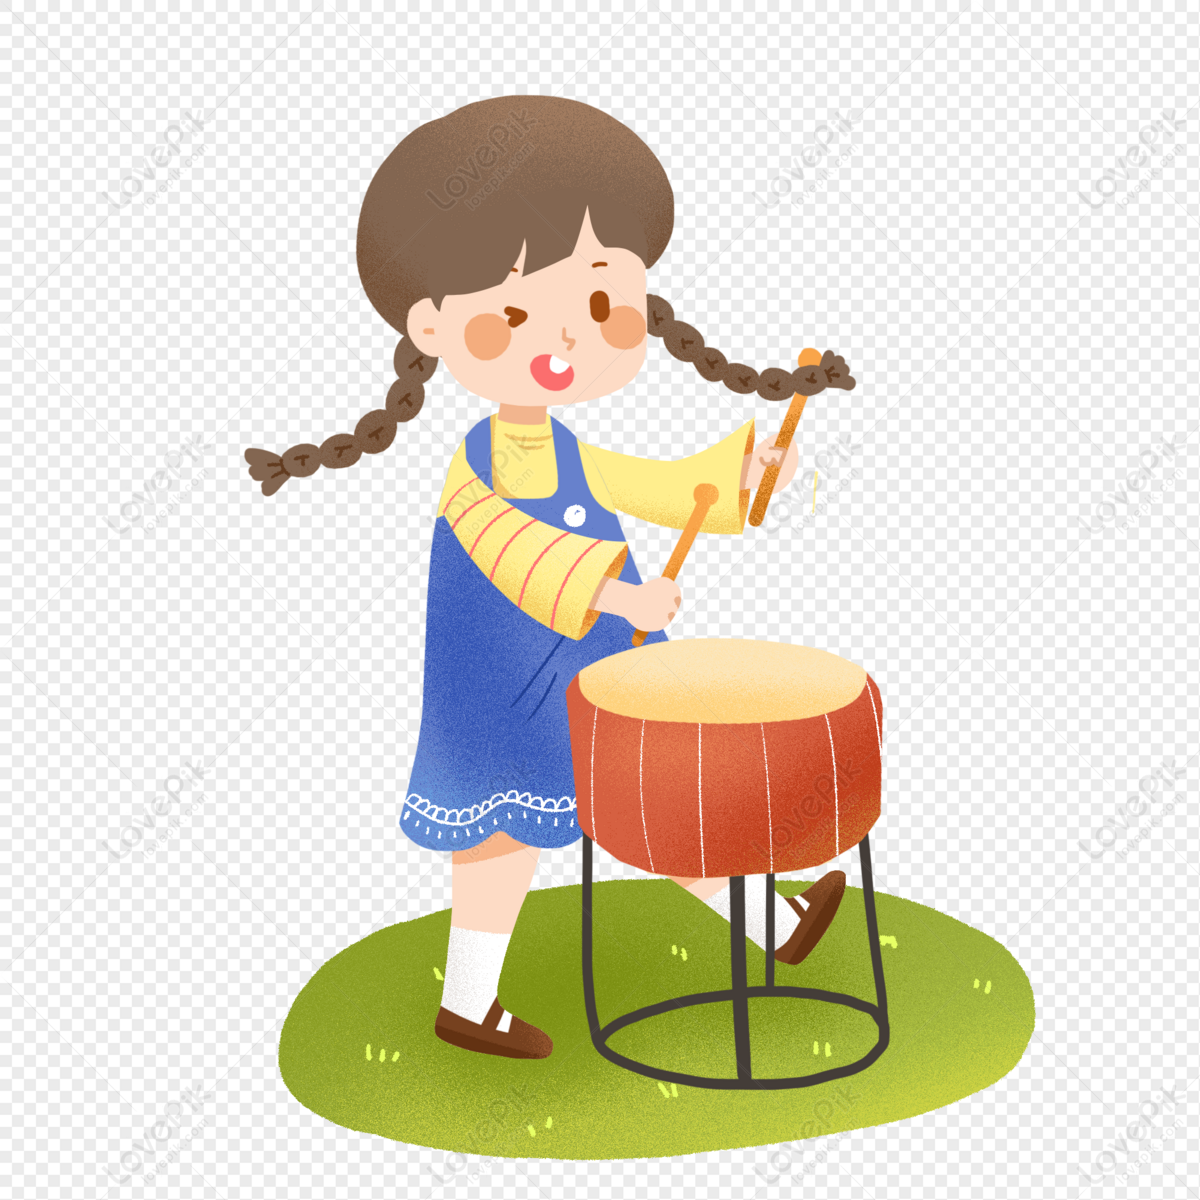 Cô gái chơi trống dễ thương, mang lại những phút giây sôi động và cực kỳ nhiệt huyết tại lễ hội âm nhạc đình đám. Hãy xem bức ảnh nàng trống thần này và cảm nhận cuồng nhiệt của cuộc sống!